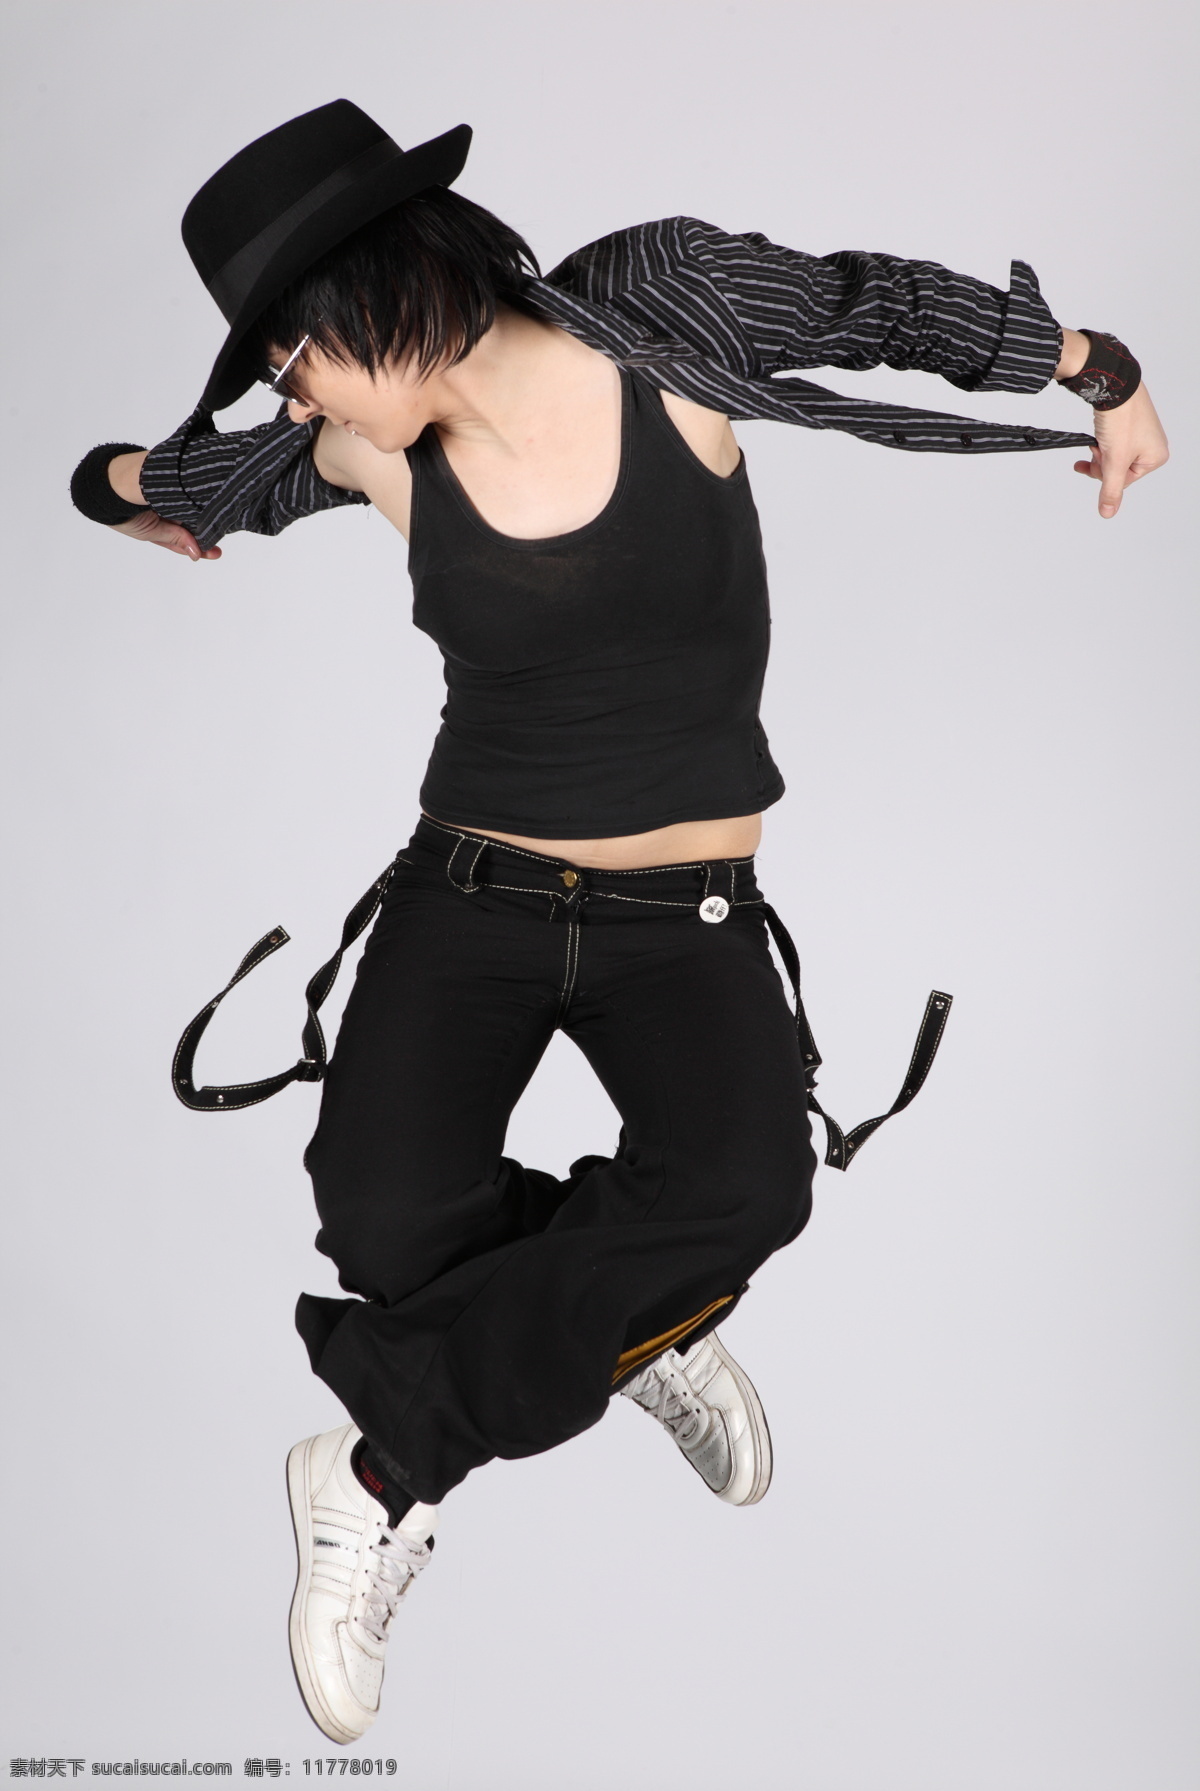 高雅 光影 人物图库 日常生活 特写 跳跃 舞蹈 舞者 舞姿 优雅 西方 jump 舞蹈音乐 运动人物 psd源文件